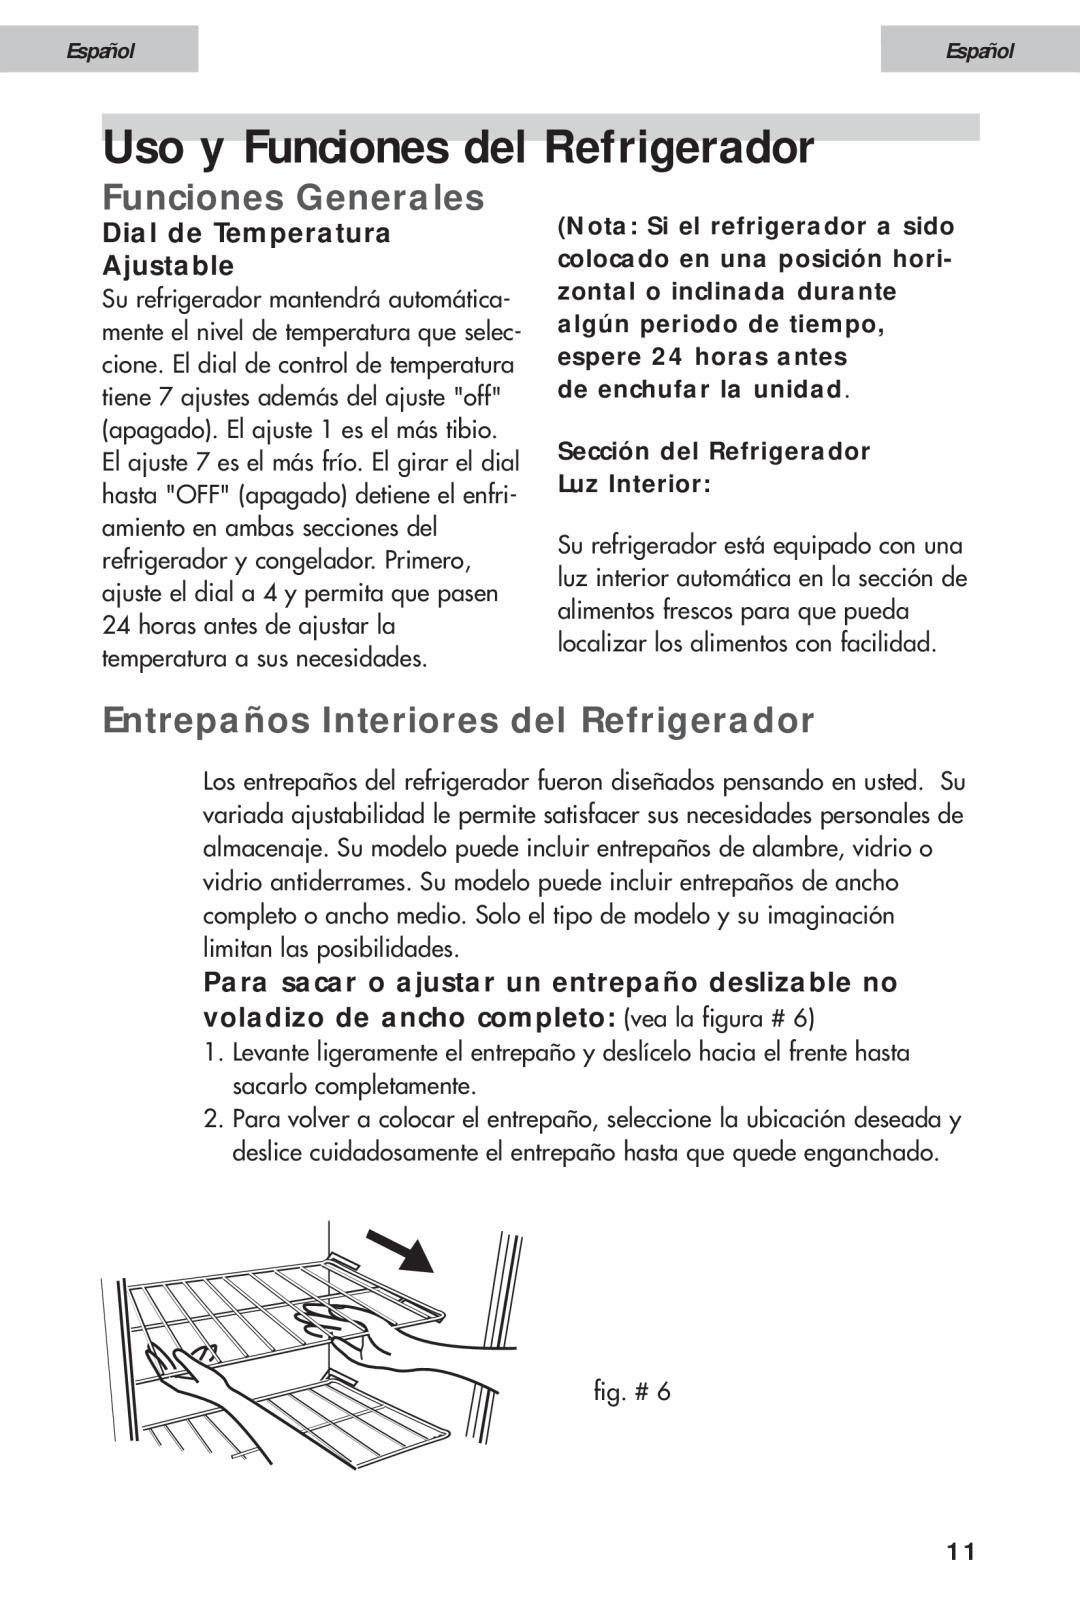 Haier HDE11WNA Uso y Funciones del Refrigerador, Funciones Generales, Entrepaños Interiores del Refrigerador, Español 